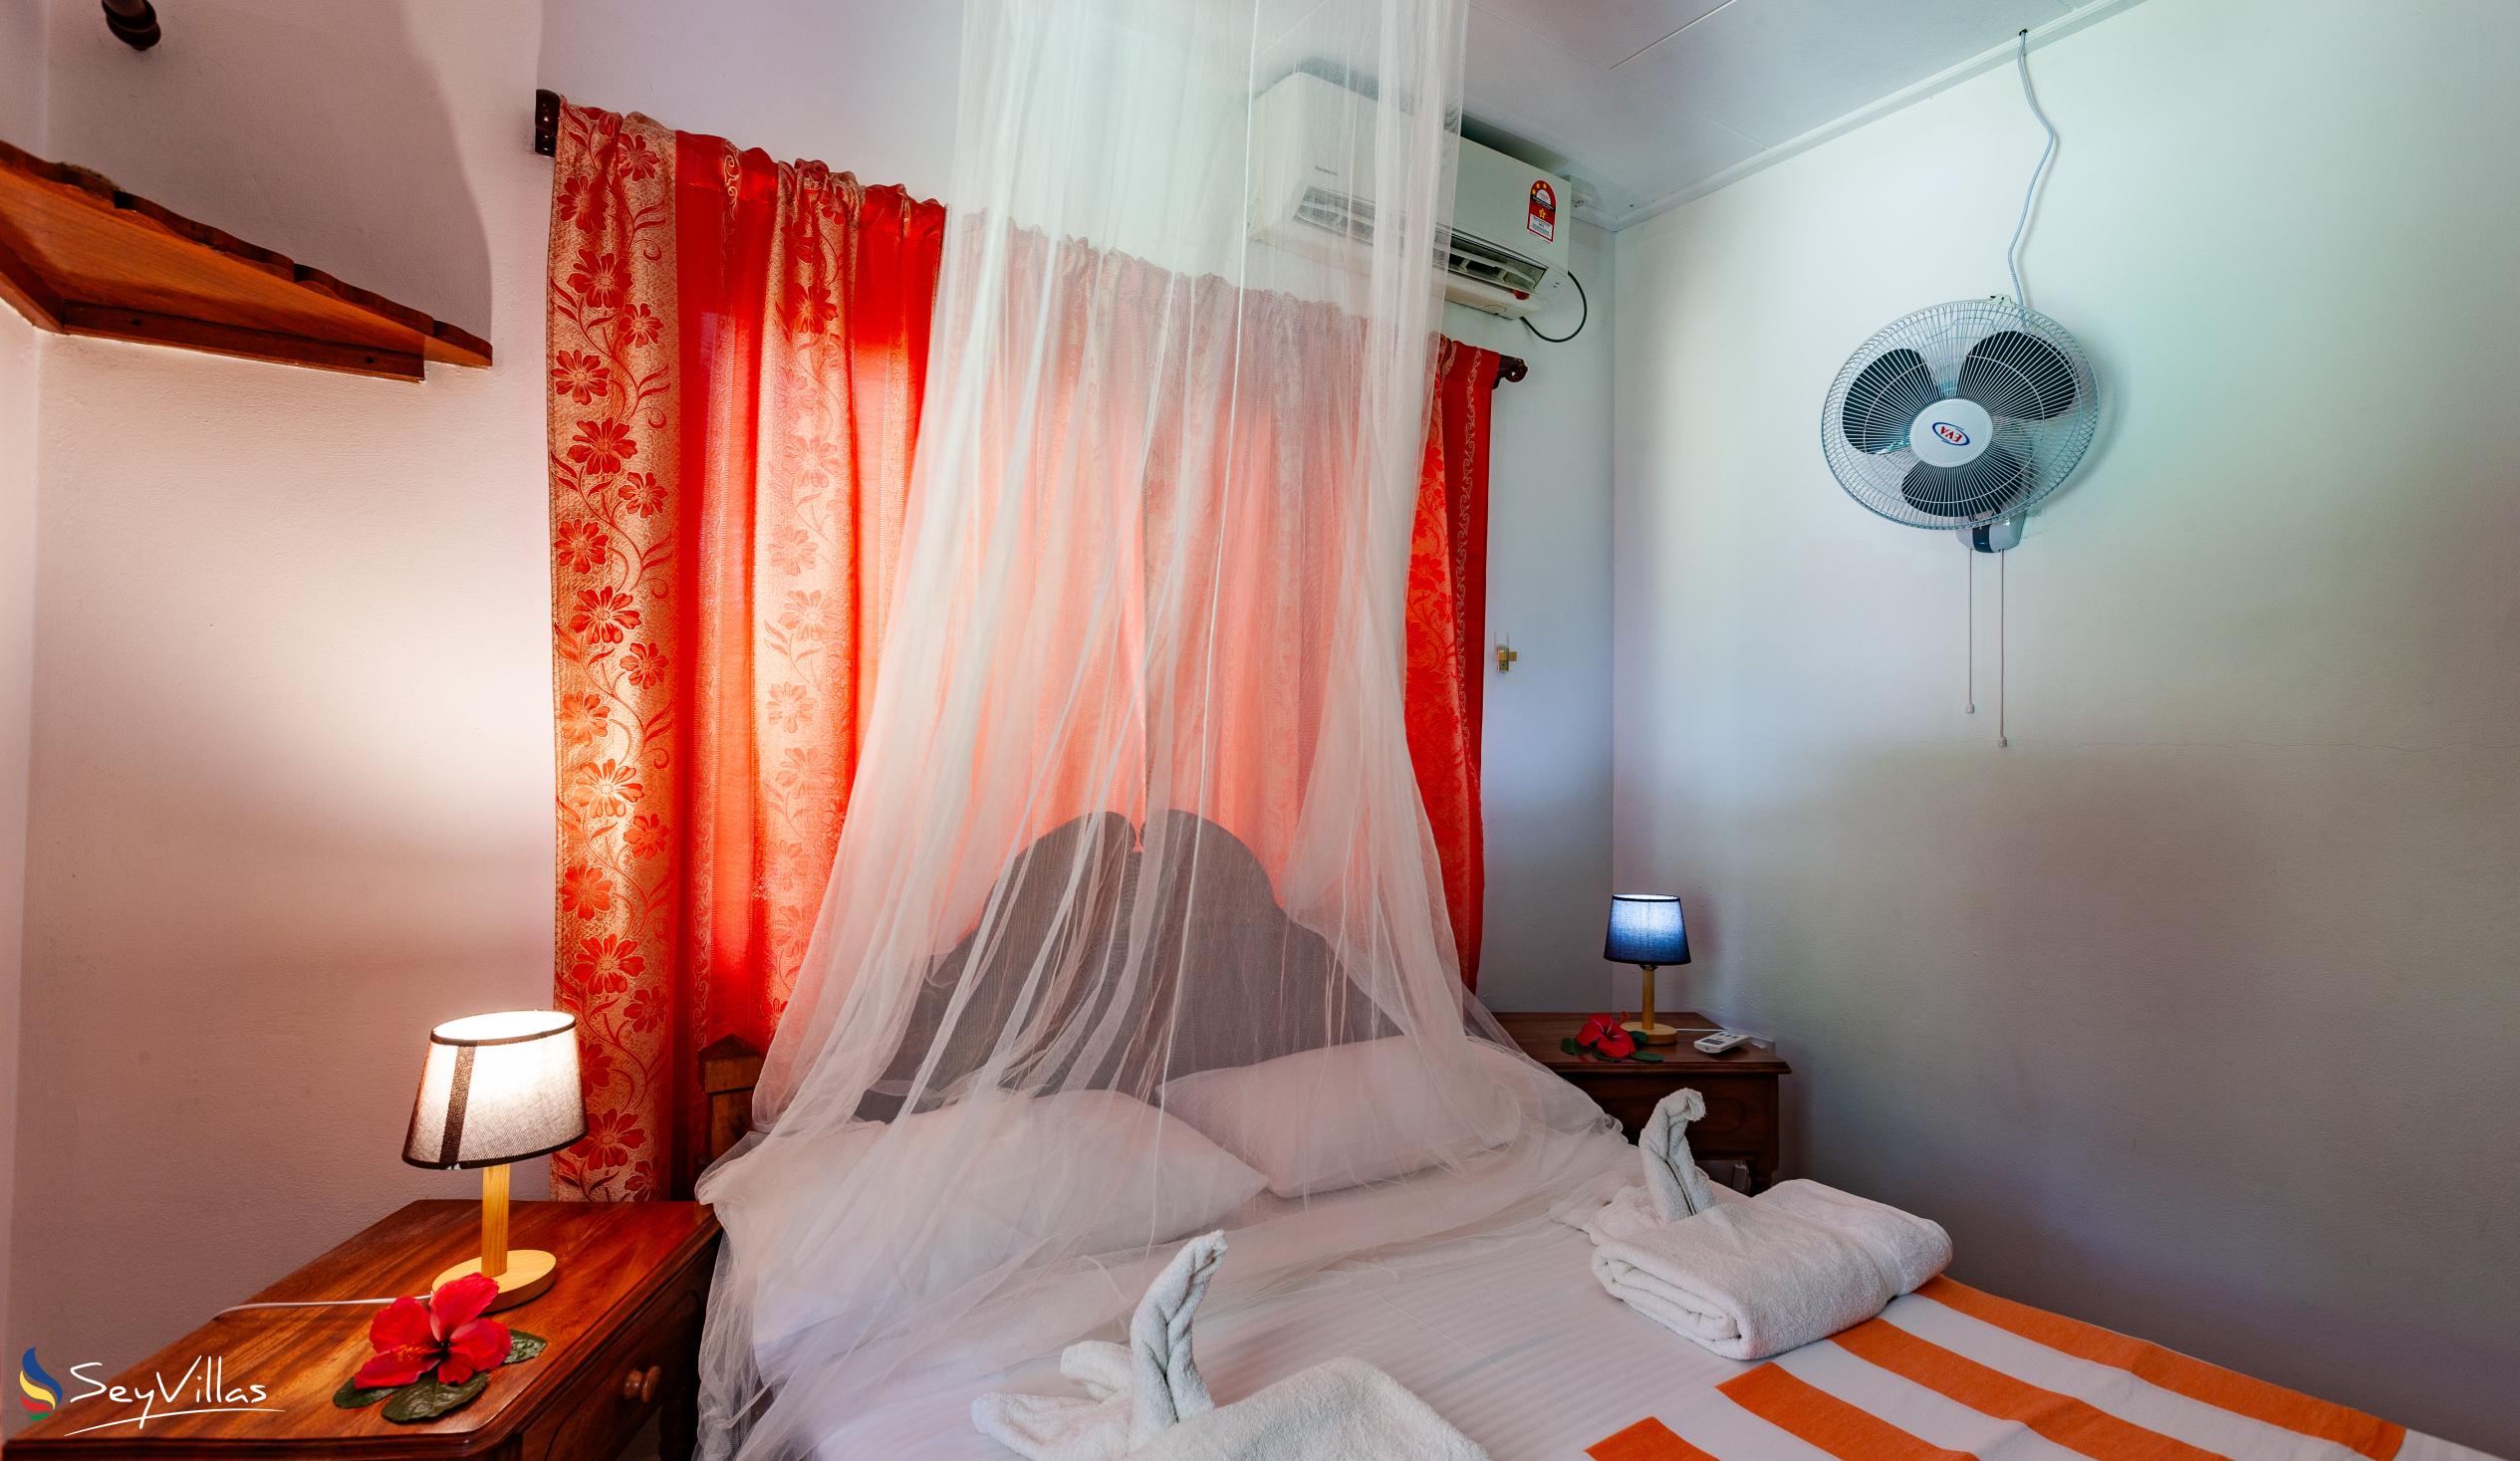 Photo 44: Dan Kazou - 2-Bedroom Apartment - La Digue (Seychelles)